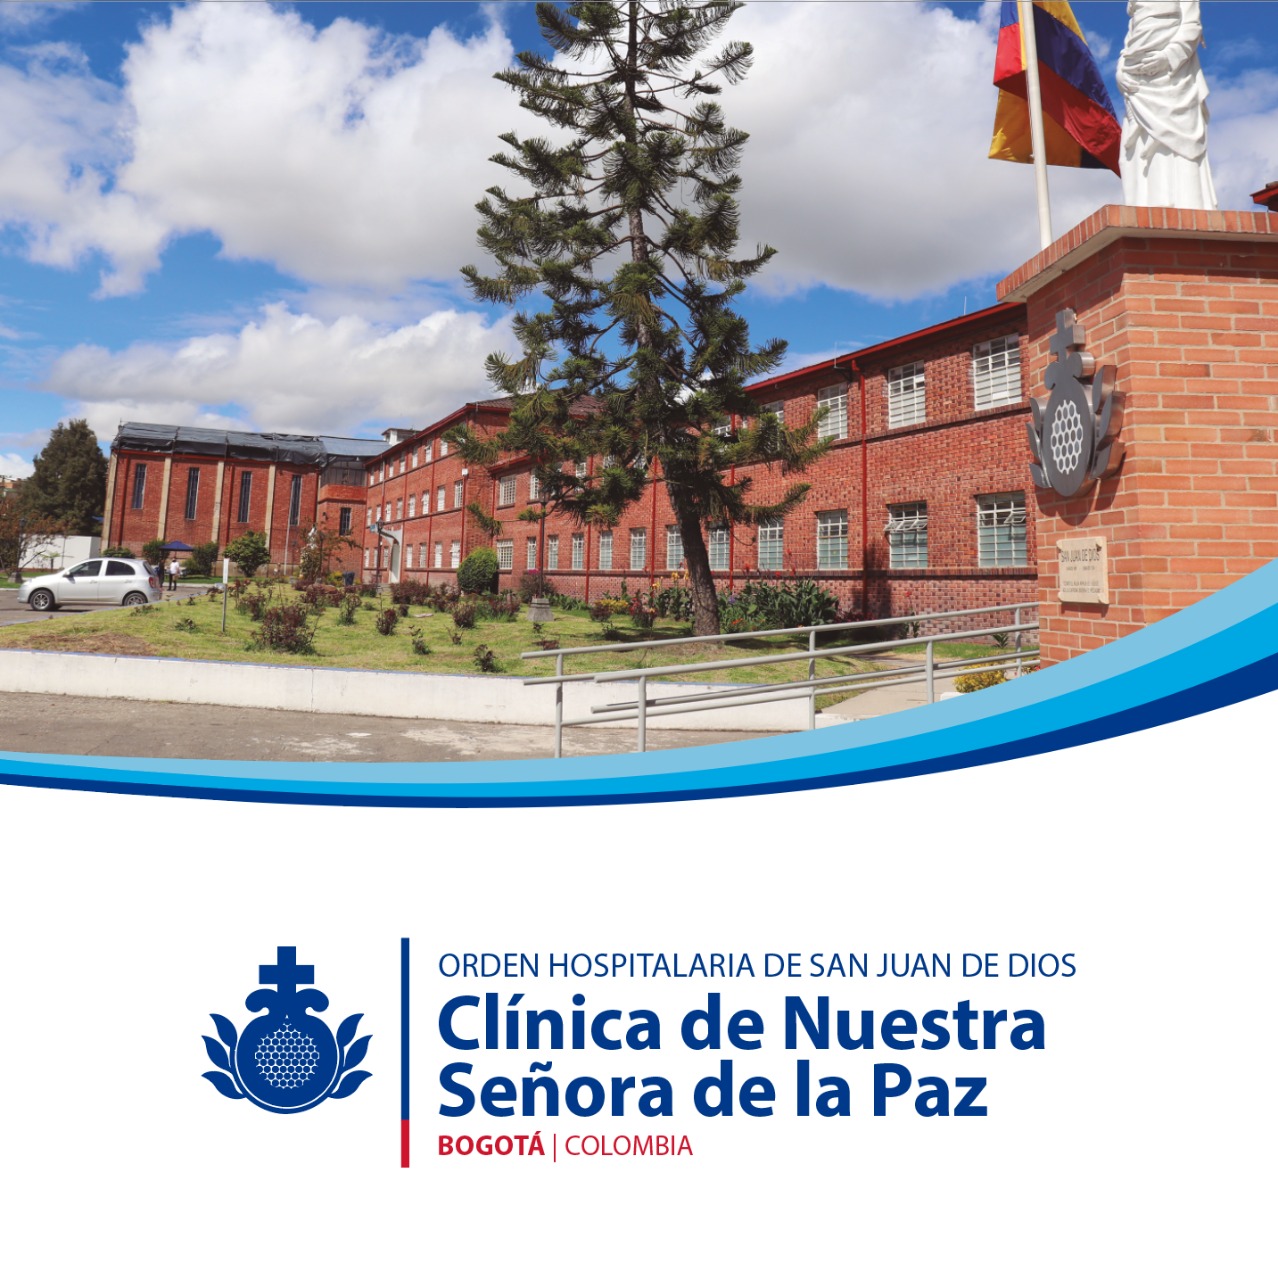 Centro Colombia Clinica Nuestra Senora de la Paz | Orden Hospitalaria San Juan de Dios